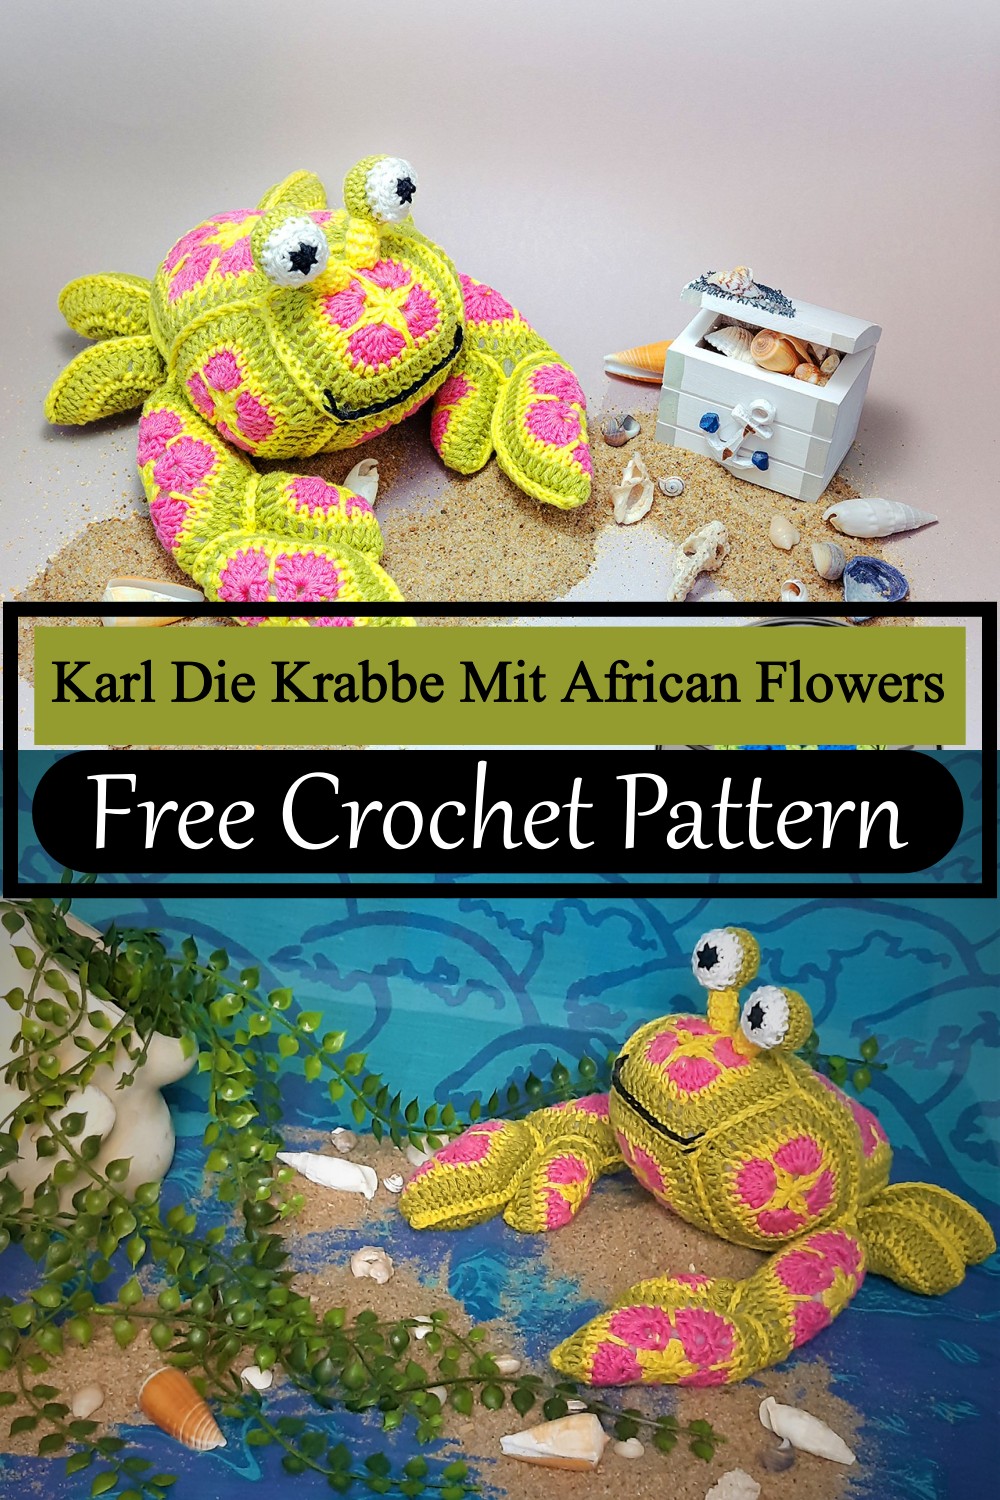 Karl Die Krabbe Mit African Flowers